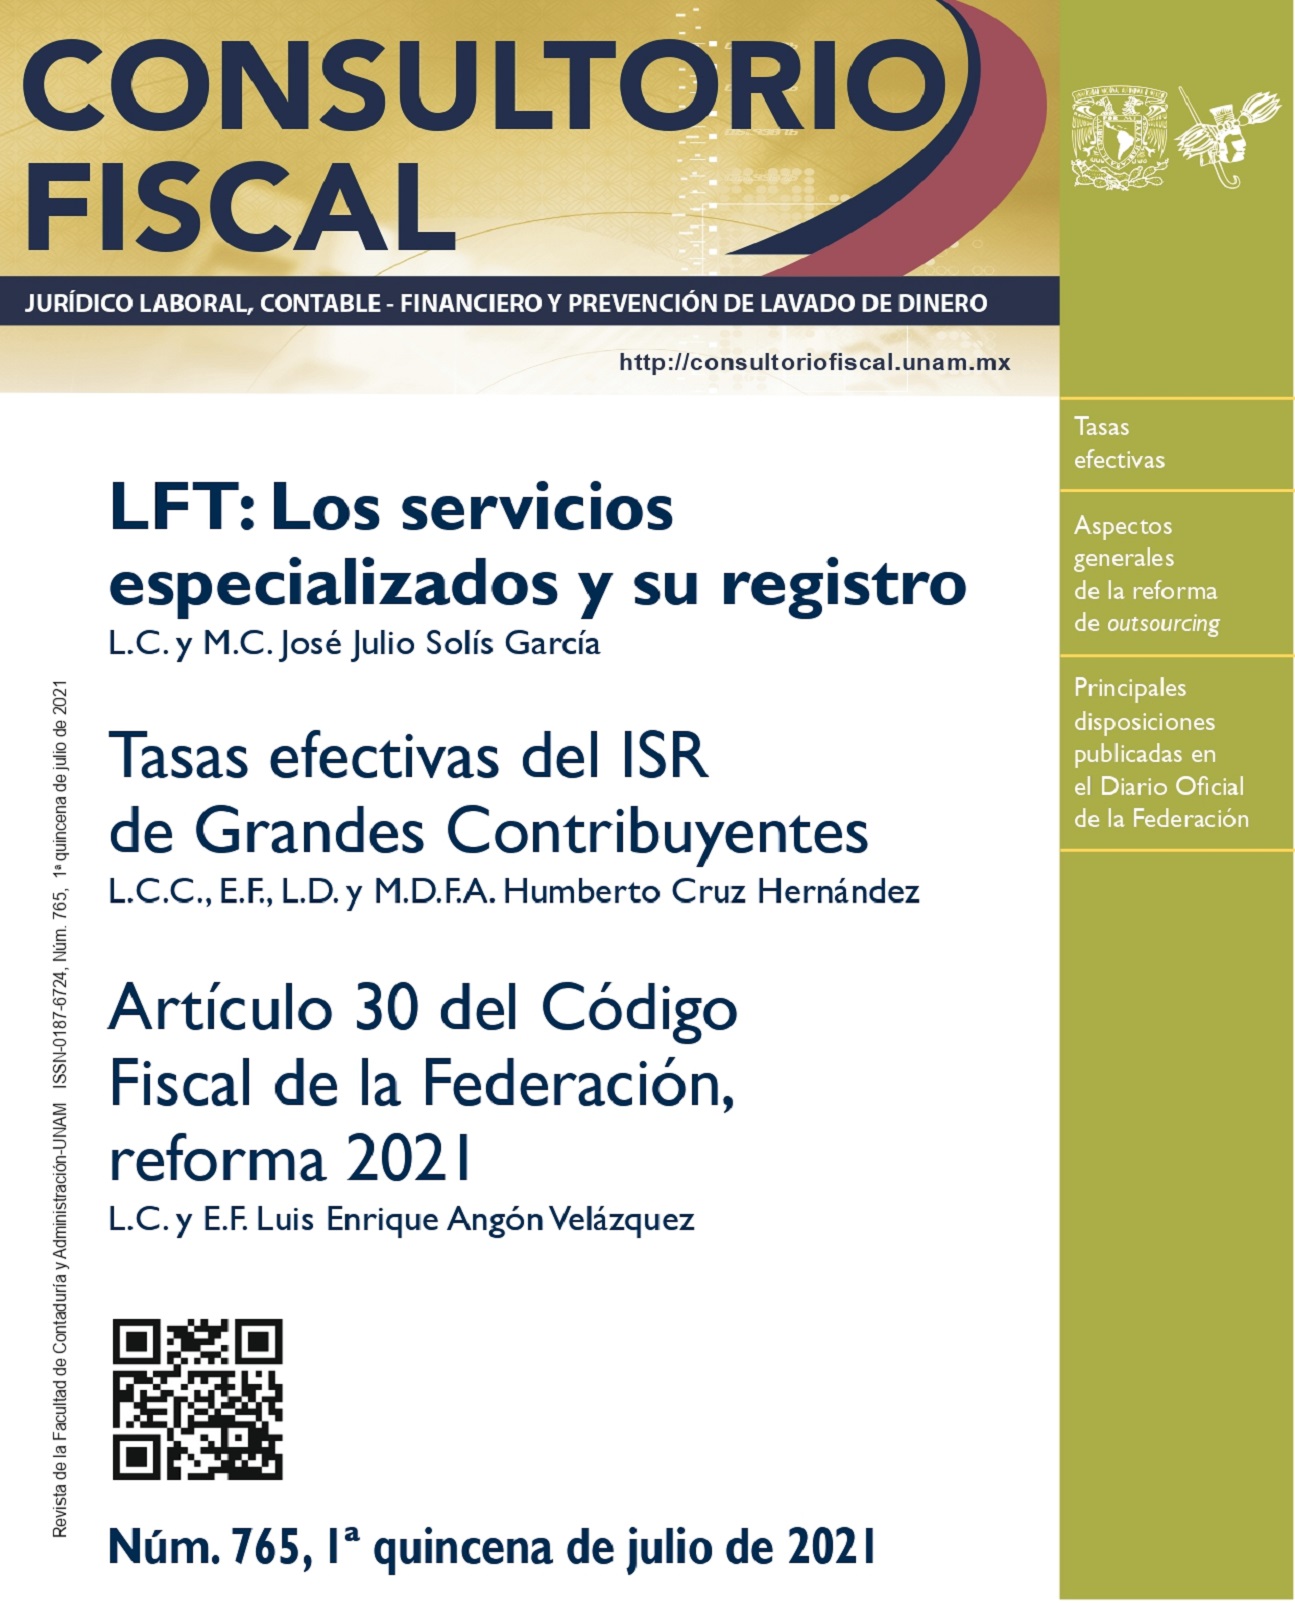 LFT: Los servicios especializados y su registro